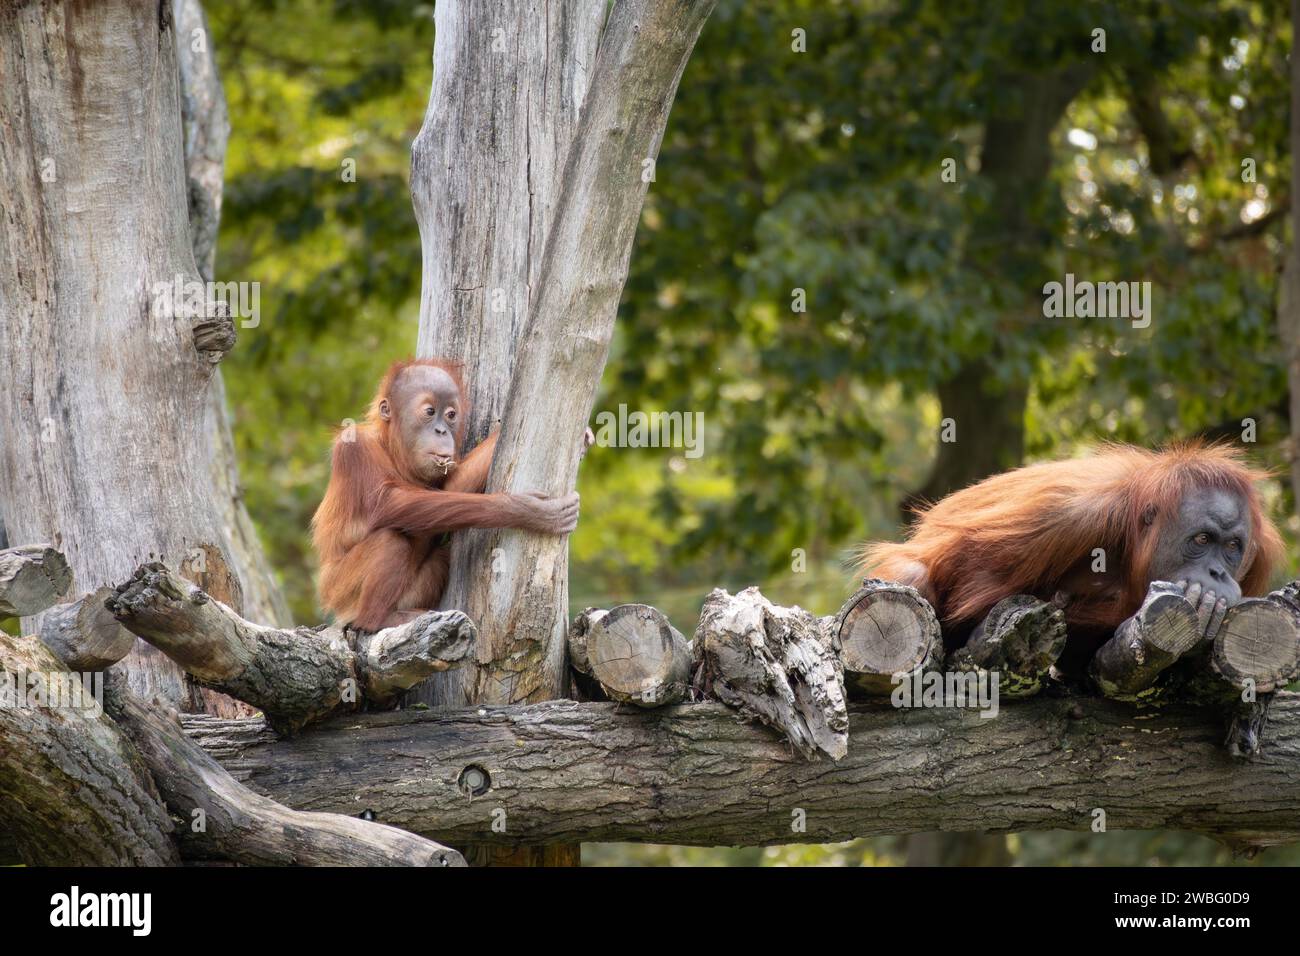 Zwei Sumatra-Orang-Utans (Baby und Erwachsener) auf Baumstamm im Zoo. Bedrohte Tiere im Zoologischen Garten. Stockfoto